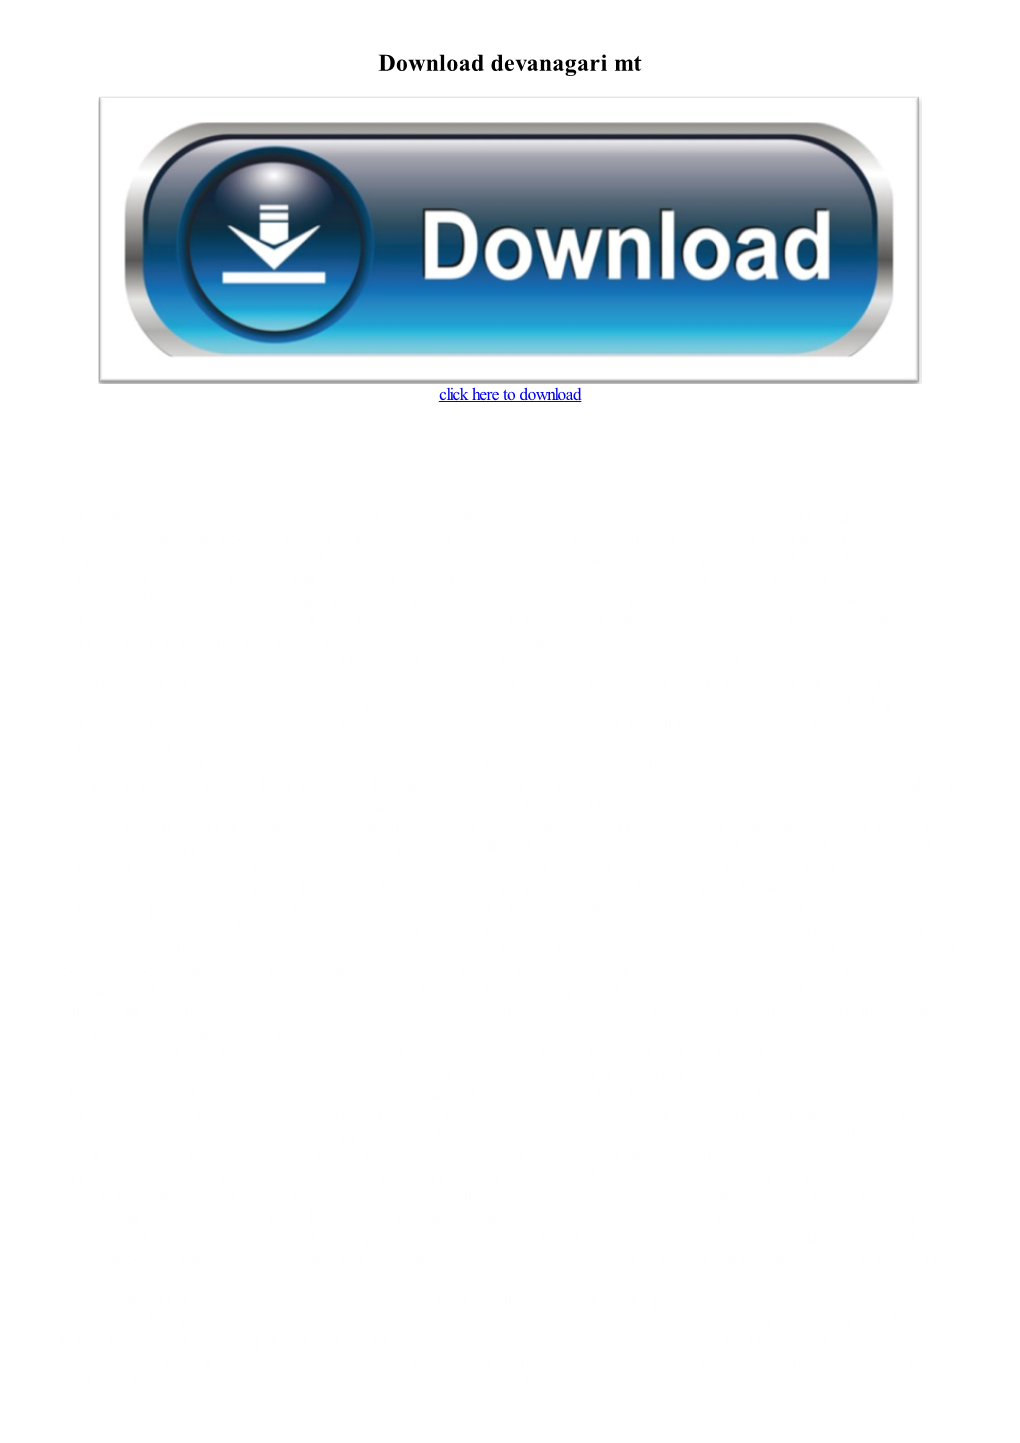 Download Devanagari Mt